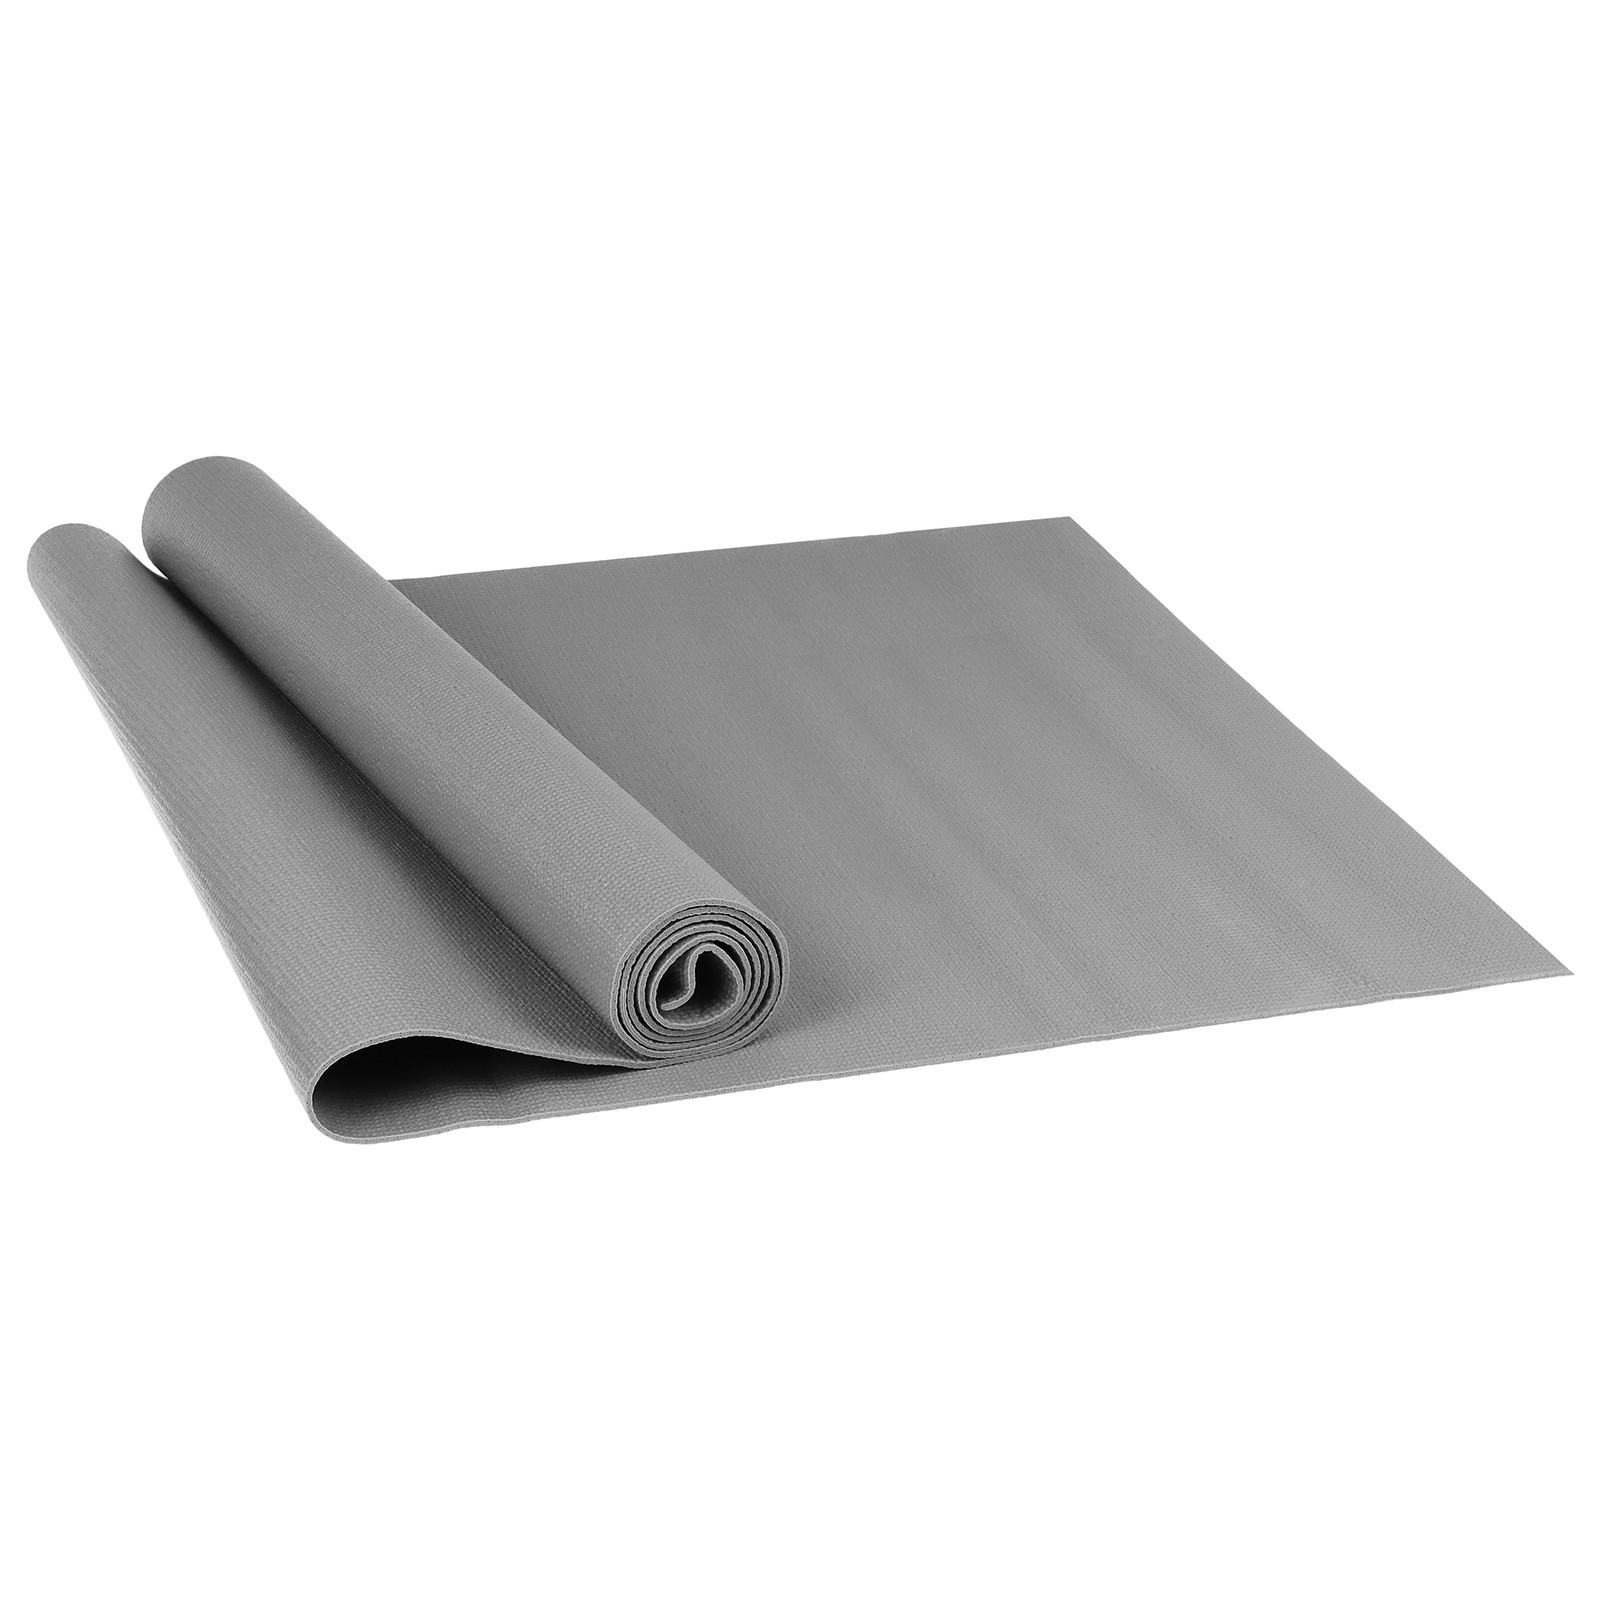 Коврик для йоги Sangh рельефный gray 173 см, 3 мм